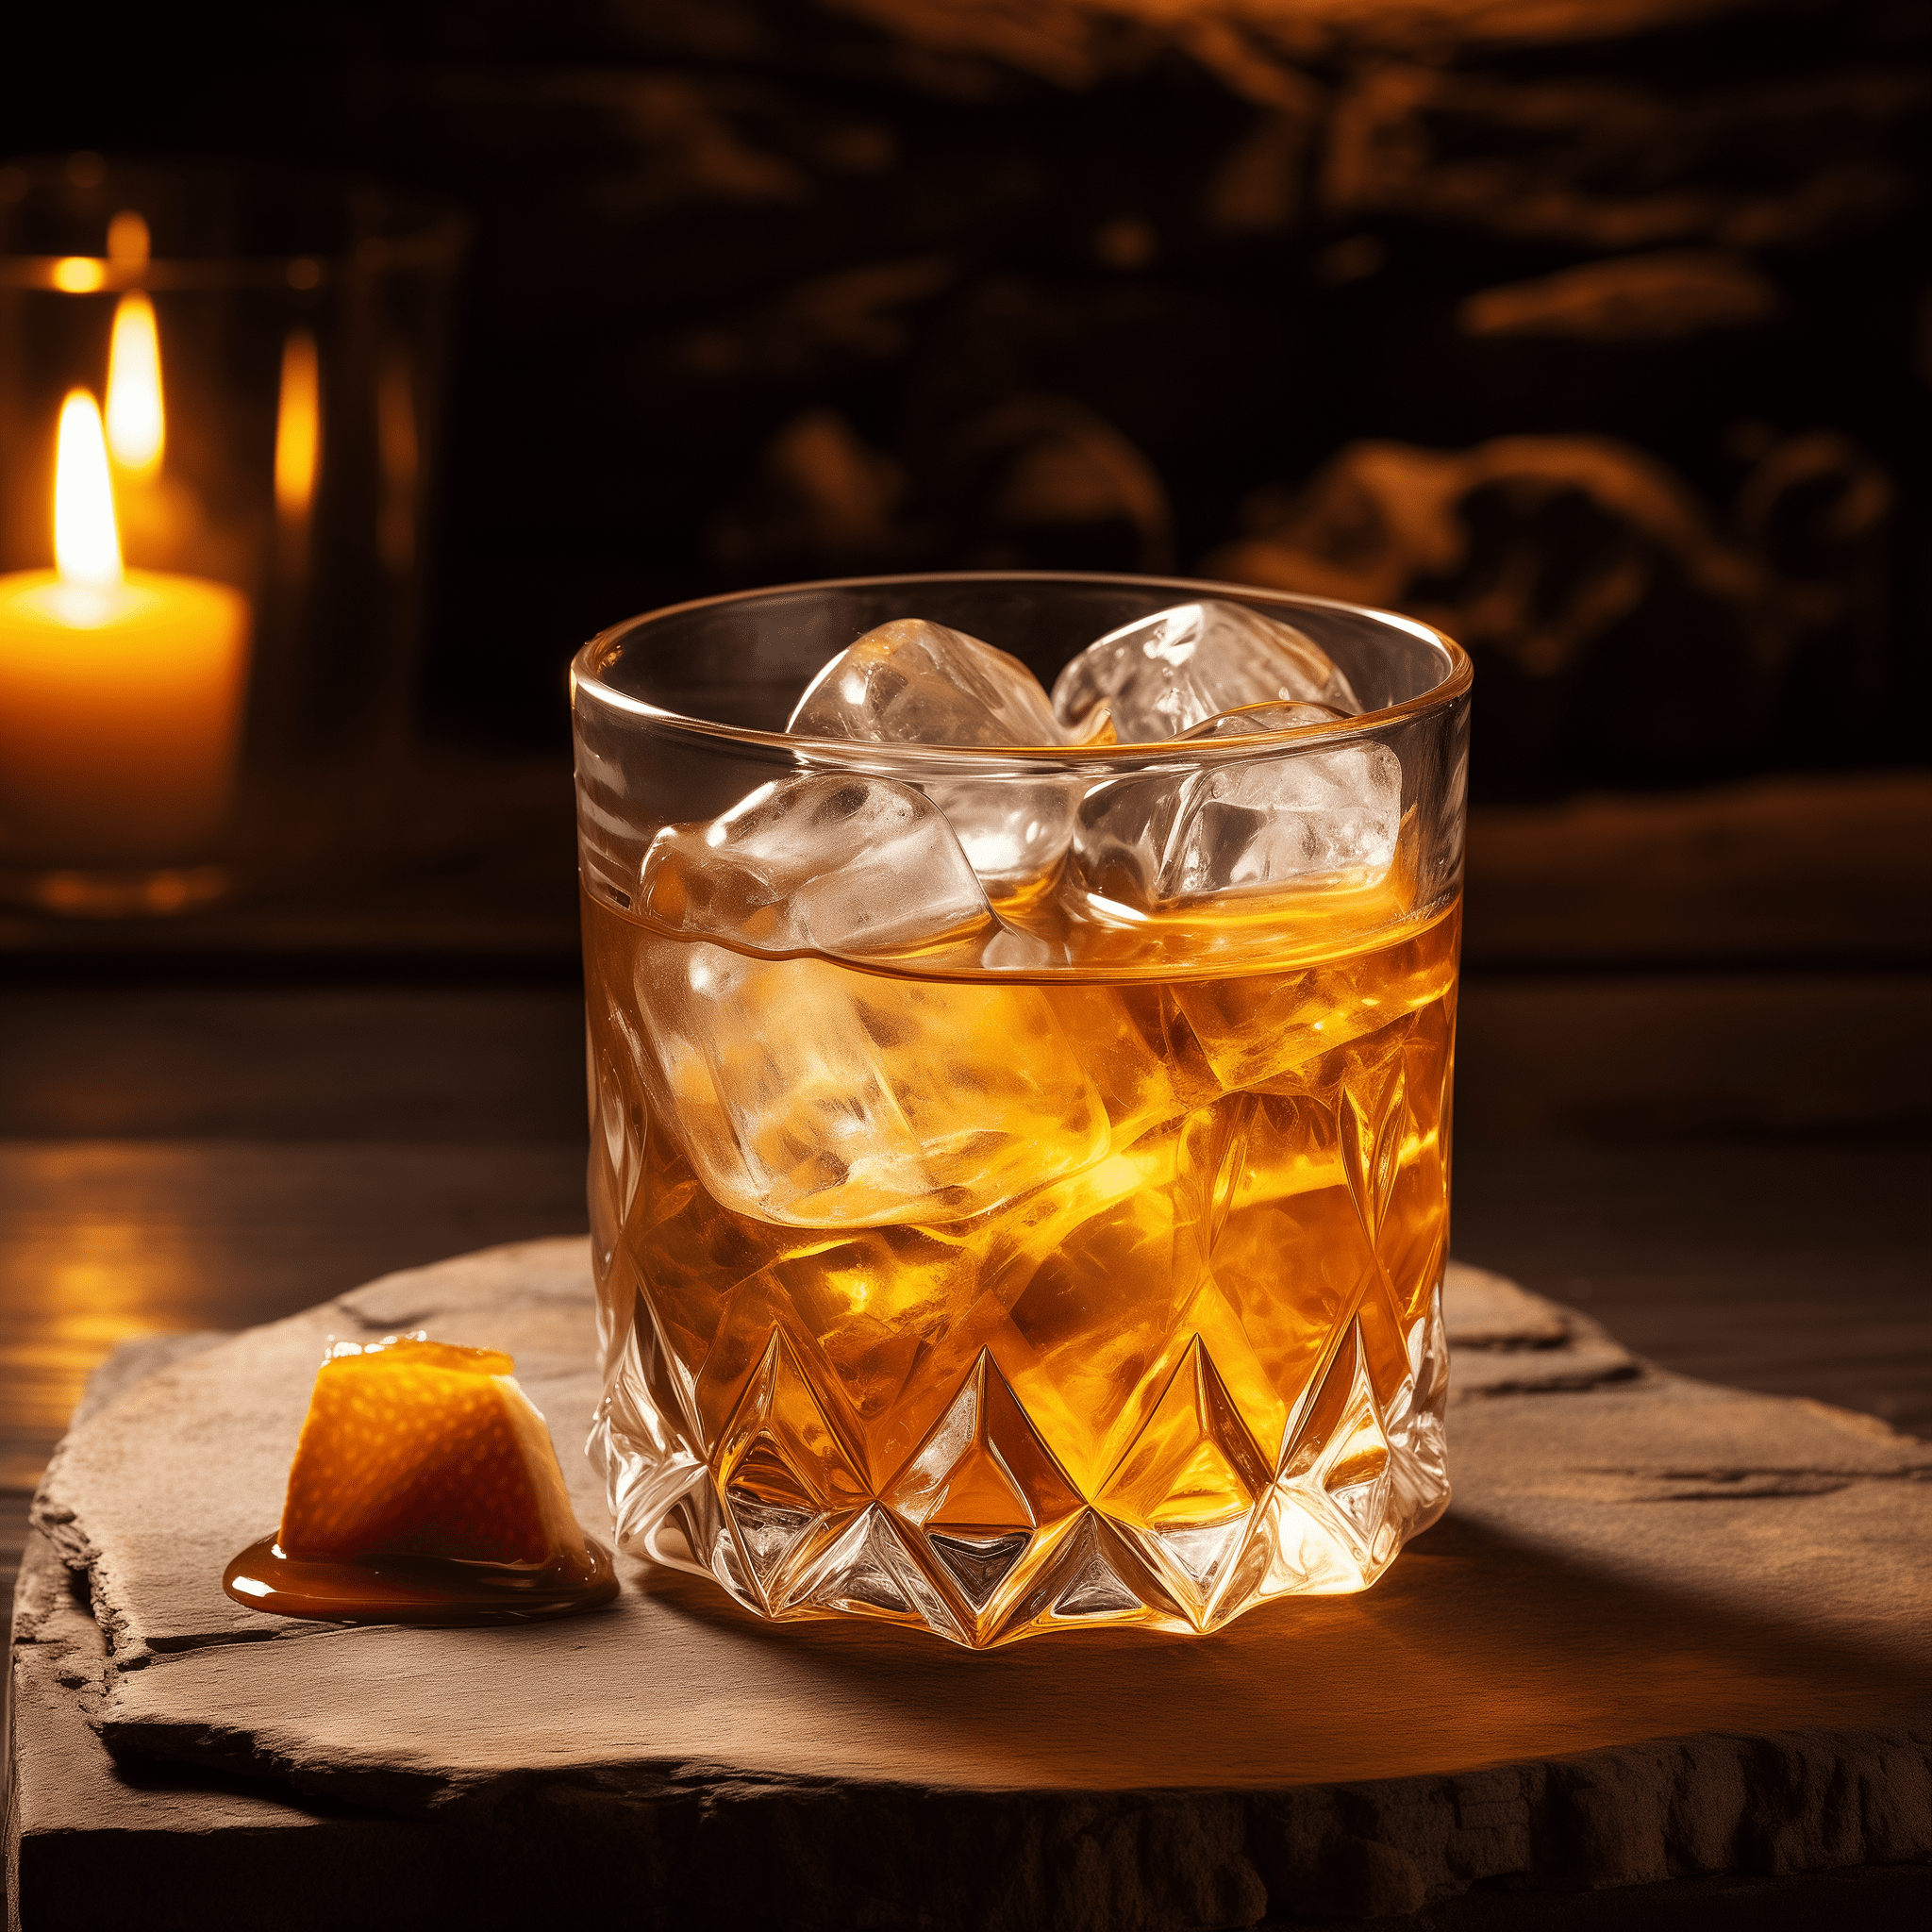 Jackhammer Cóctel Receta - El Jackhammer es un cóctel robusto con un perfil suave y dulce. El whisky proporciona una base cálida y amaderada, mientras que el amaretto aporta una dulzura de almendra rica que complementa la mordida del whisky. Es una mezcla equilibrada de fuerza y dulzura.